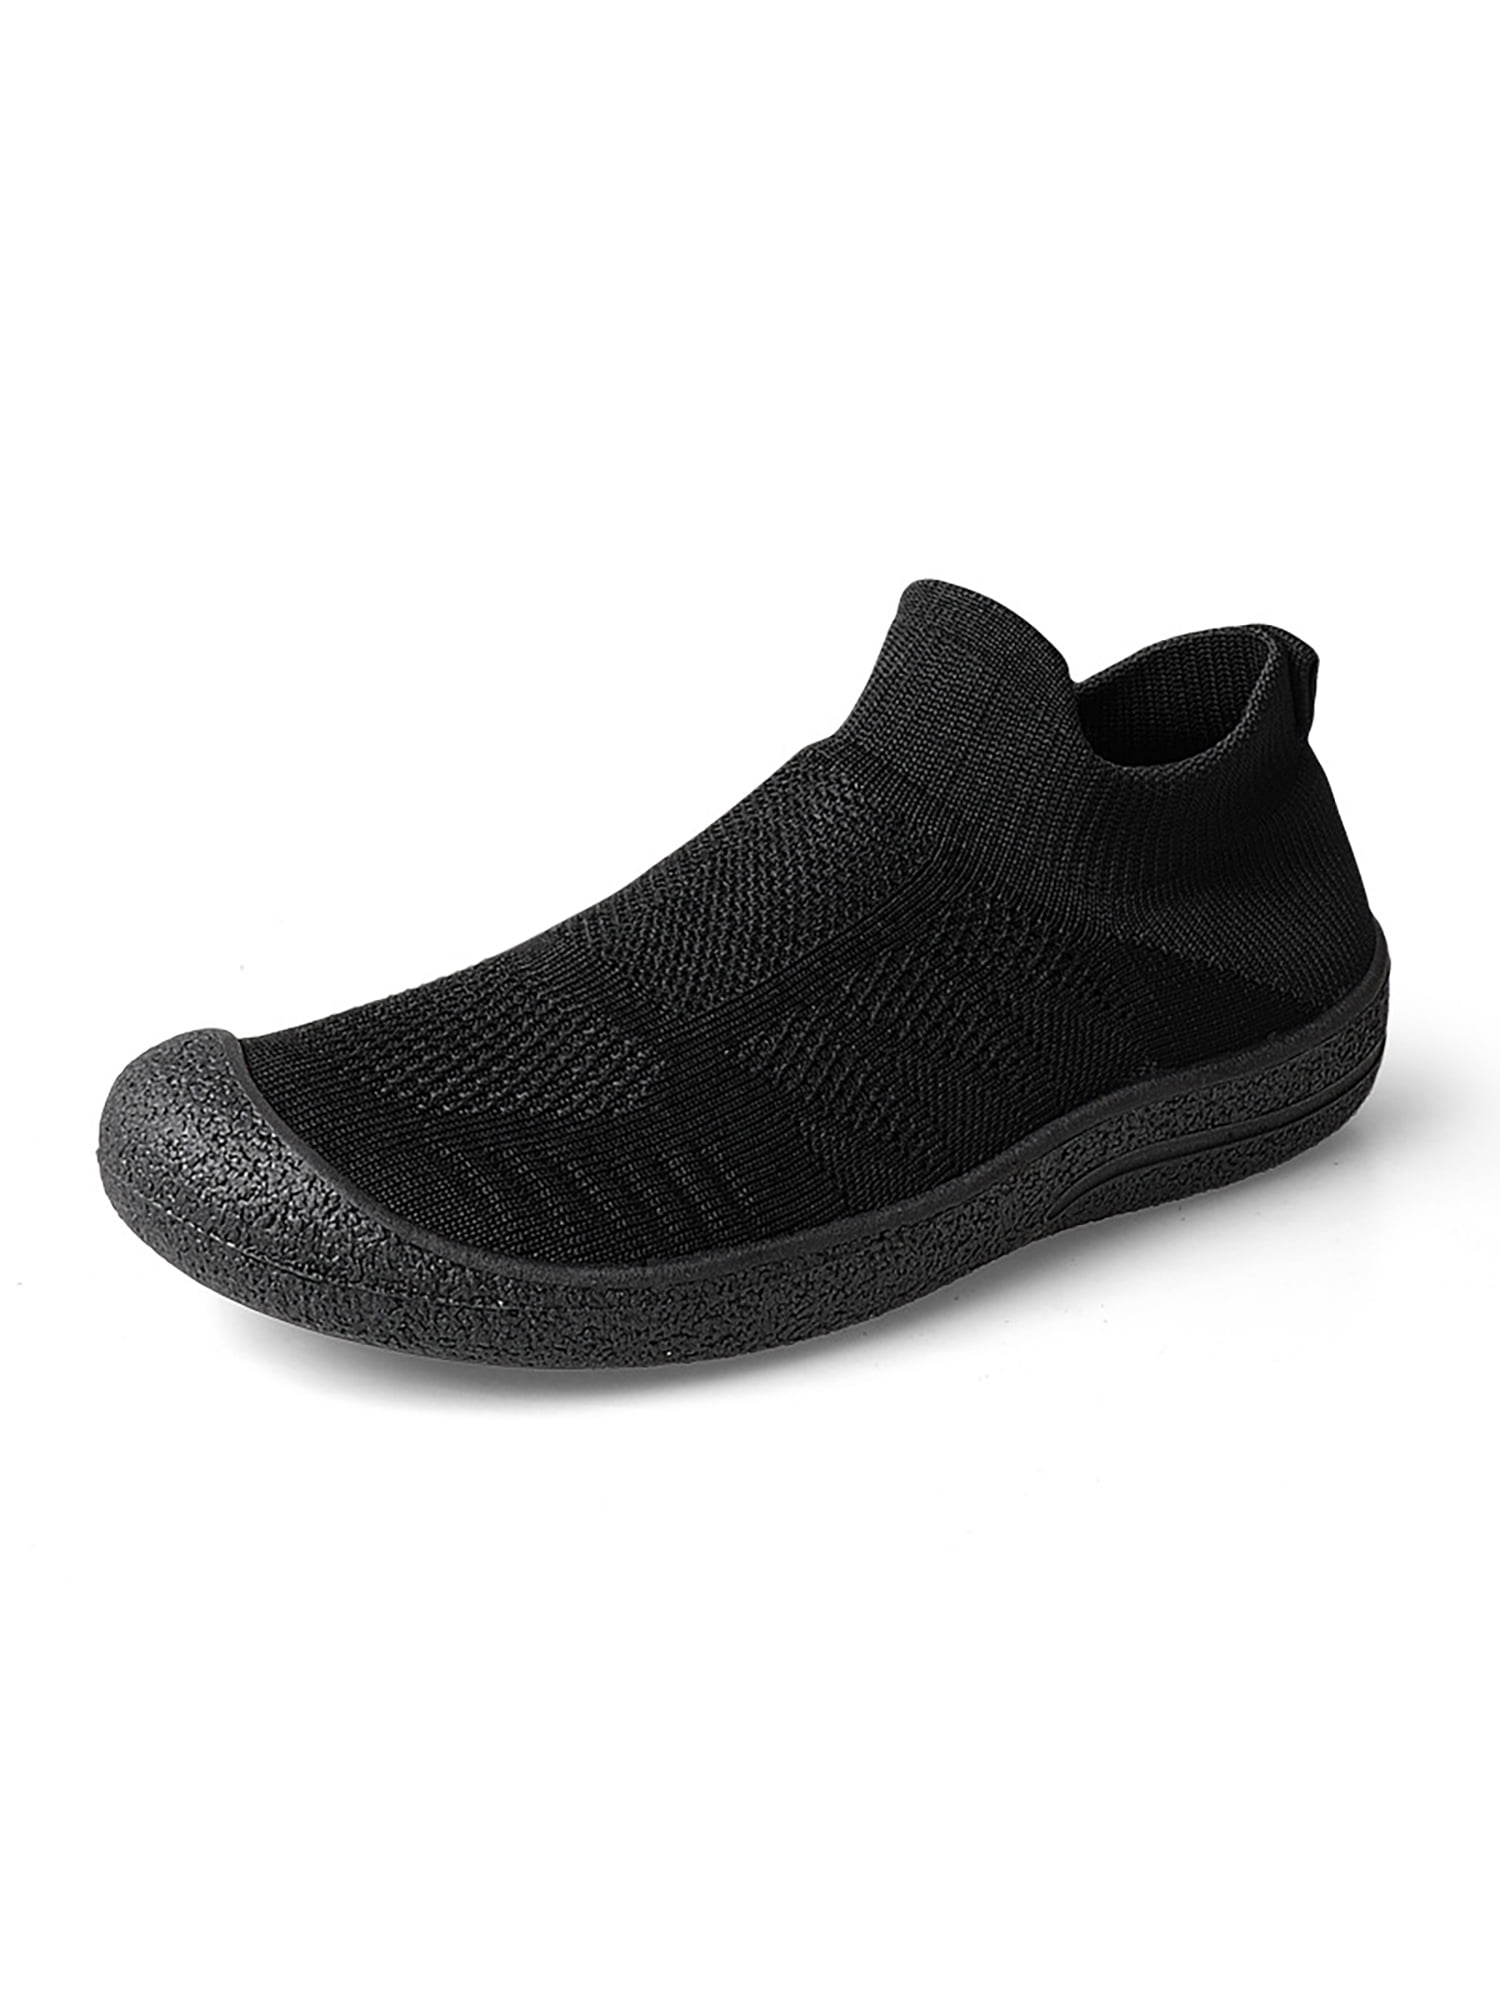 Woobling Womens Sneakers Knit Upper Aqua Socks Breathable Water Shoe ...